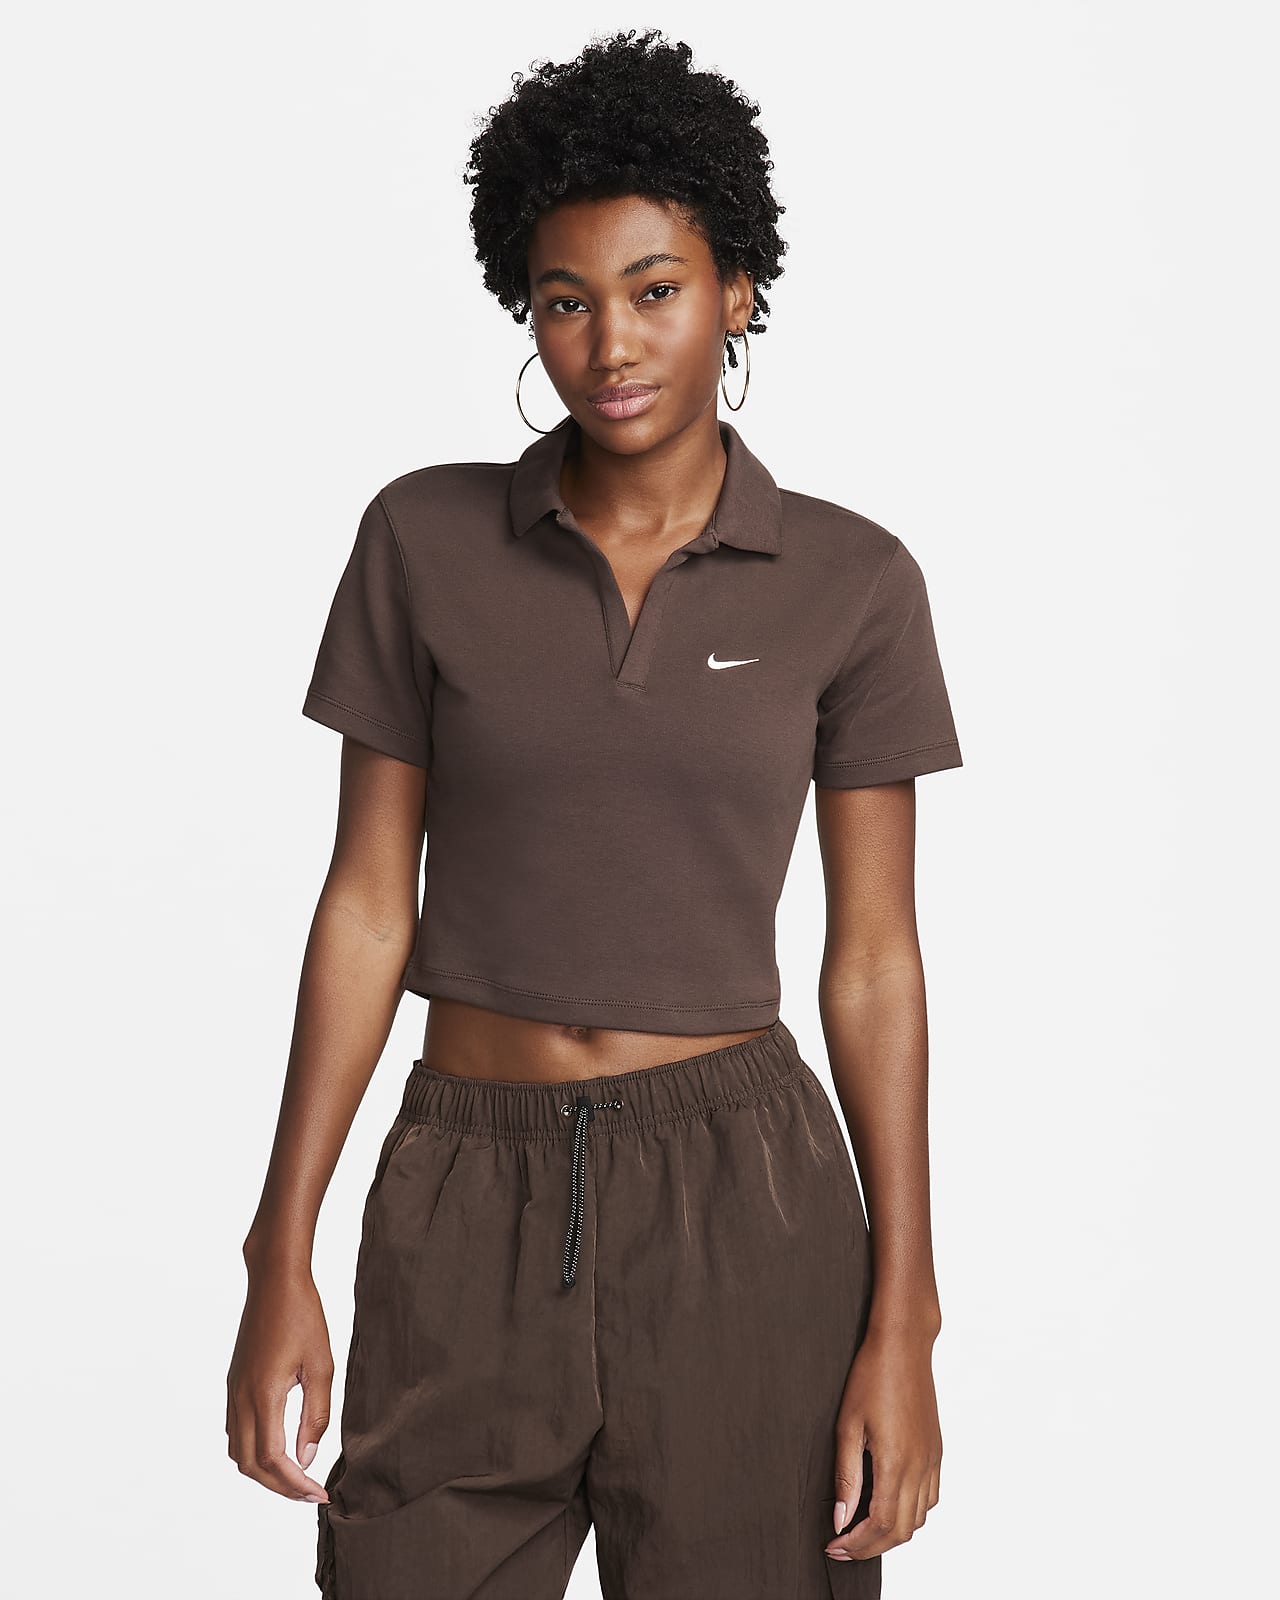 Nike Sportswear Essential Women's Short-Sleeve Polo Top.